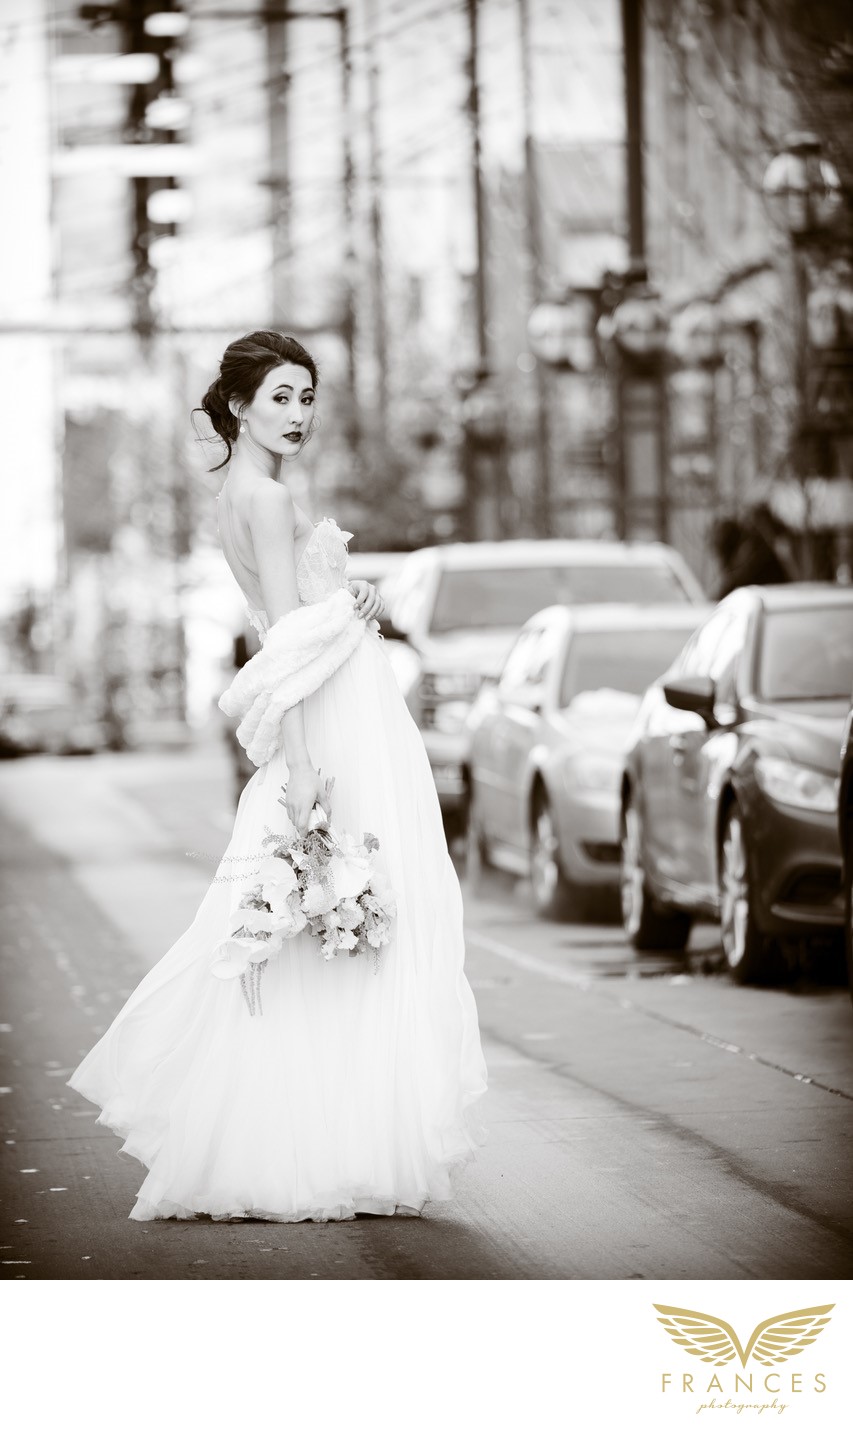 Top Denver Wedding Photographer Bridal Photos